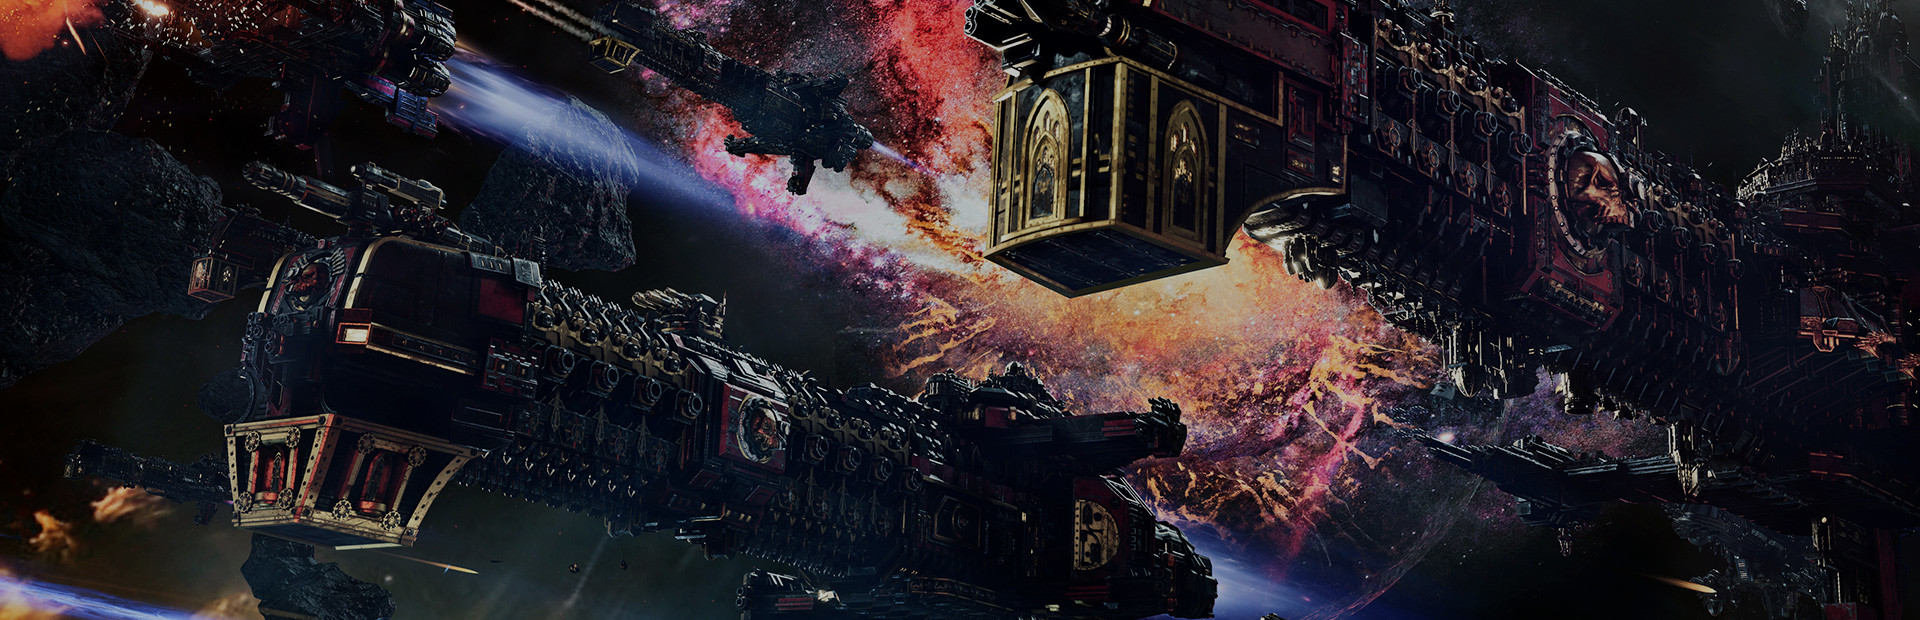 Battlefleet Gothic: Armada 2 cover image